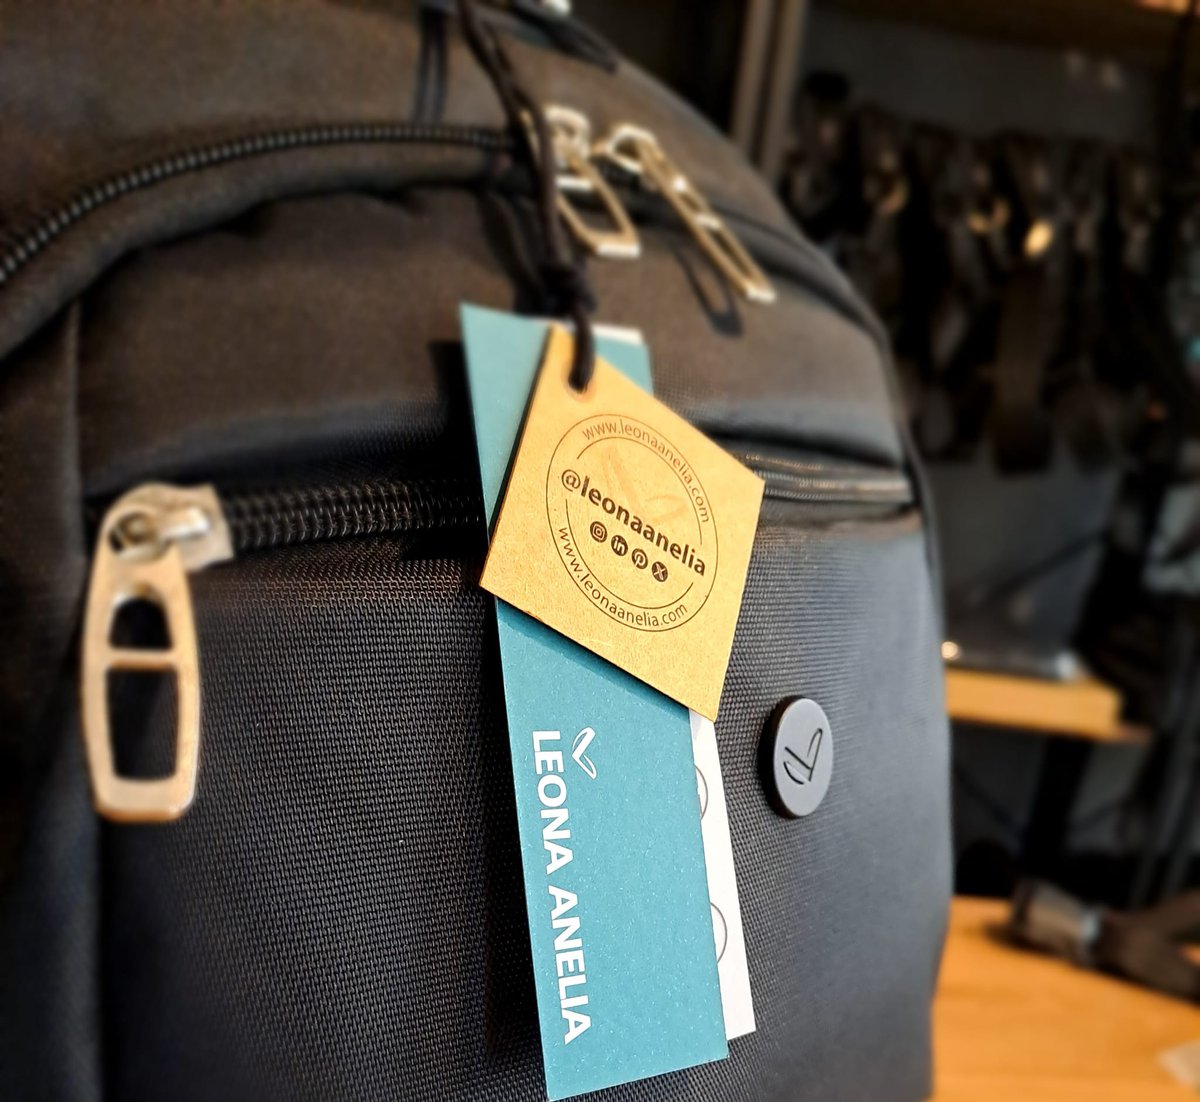 📣 Kurumsal kimlik materyallerinden sırt çantalarının yeni, daha hafif modelleri satışta ⚡ ⚡ 👨‍💻 👩‍💻

#kurumsalhediye #backpacks #startup #markayönetimi